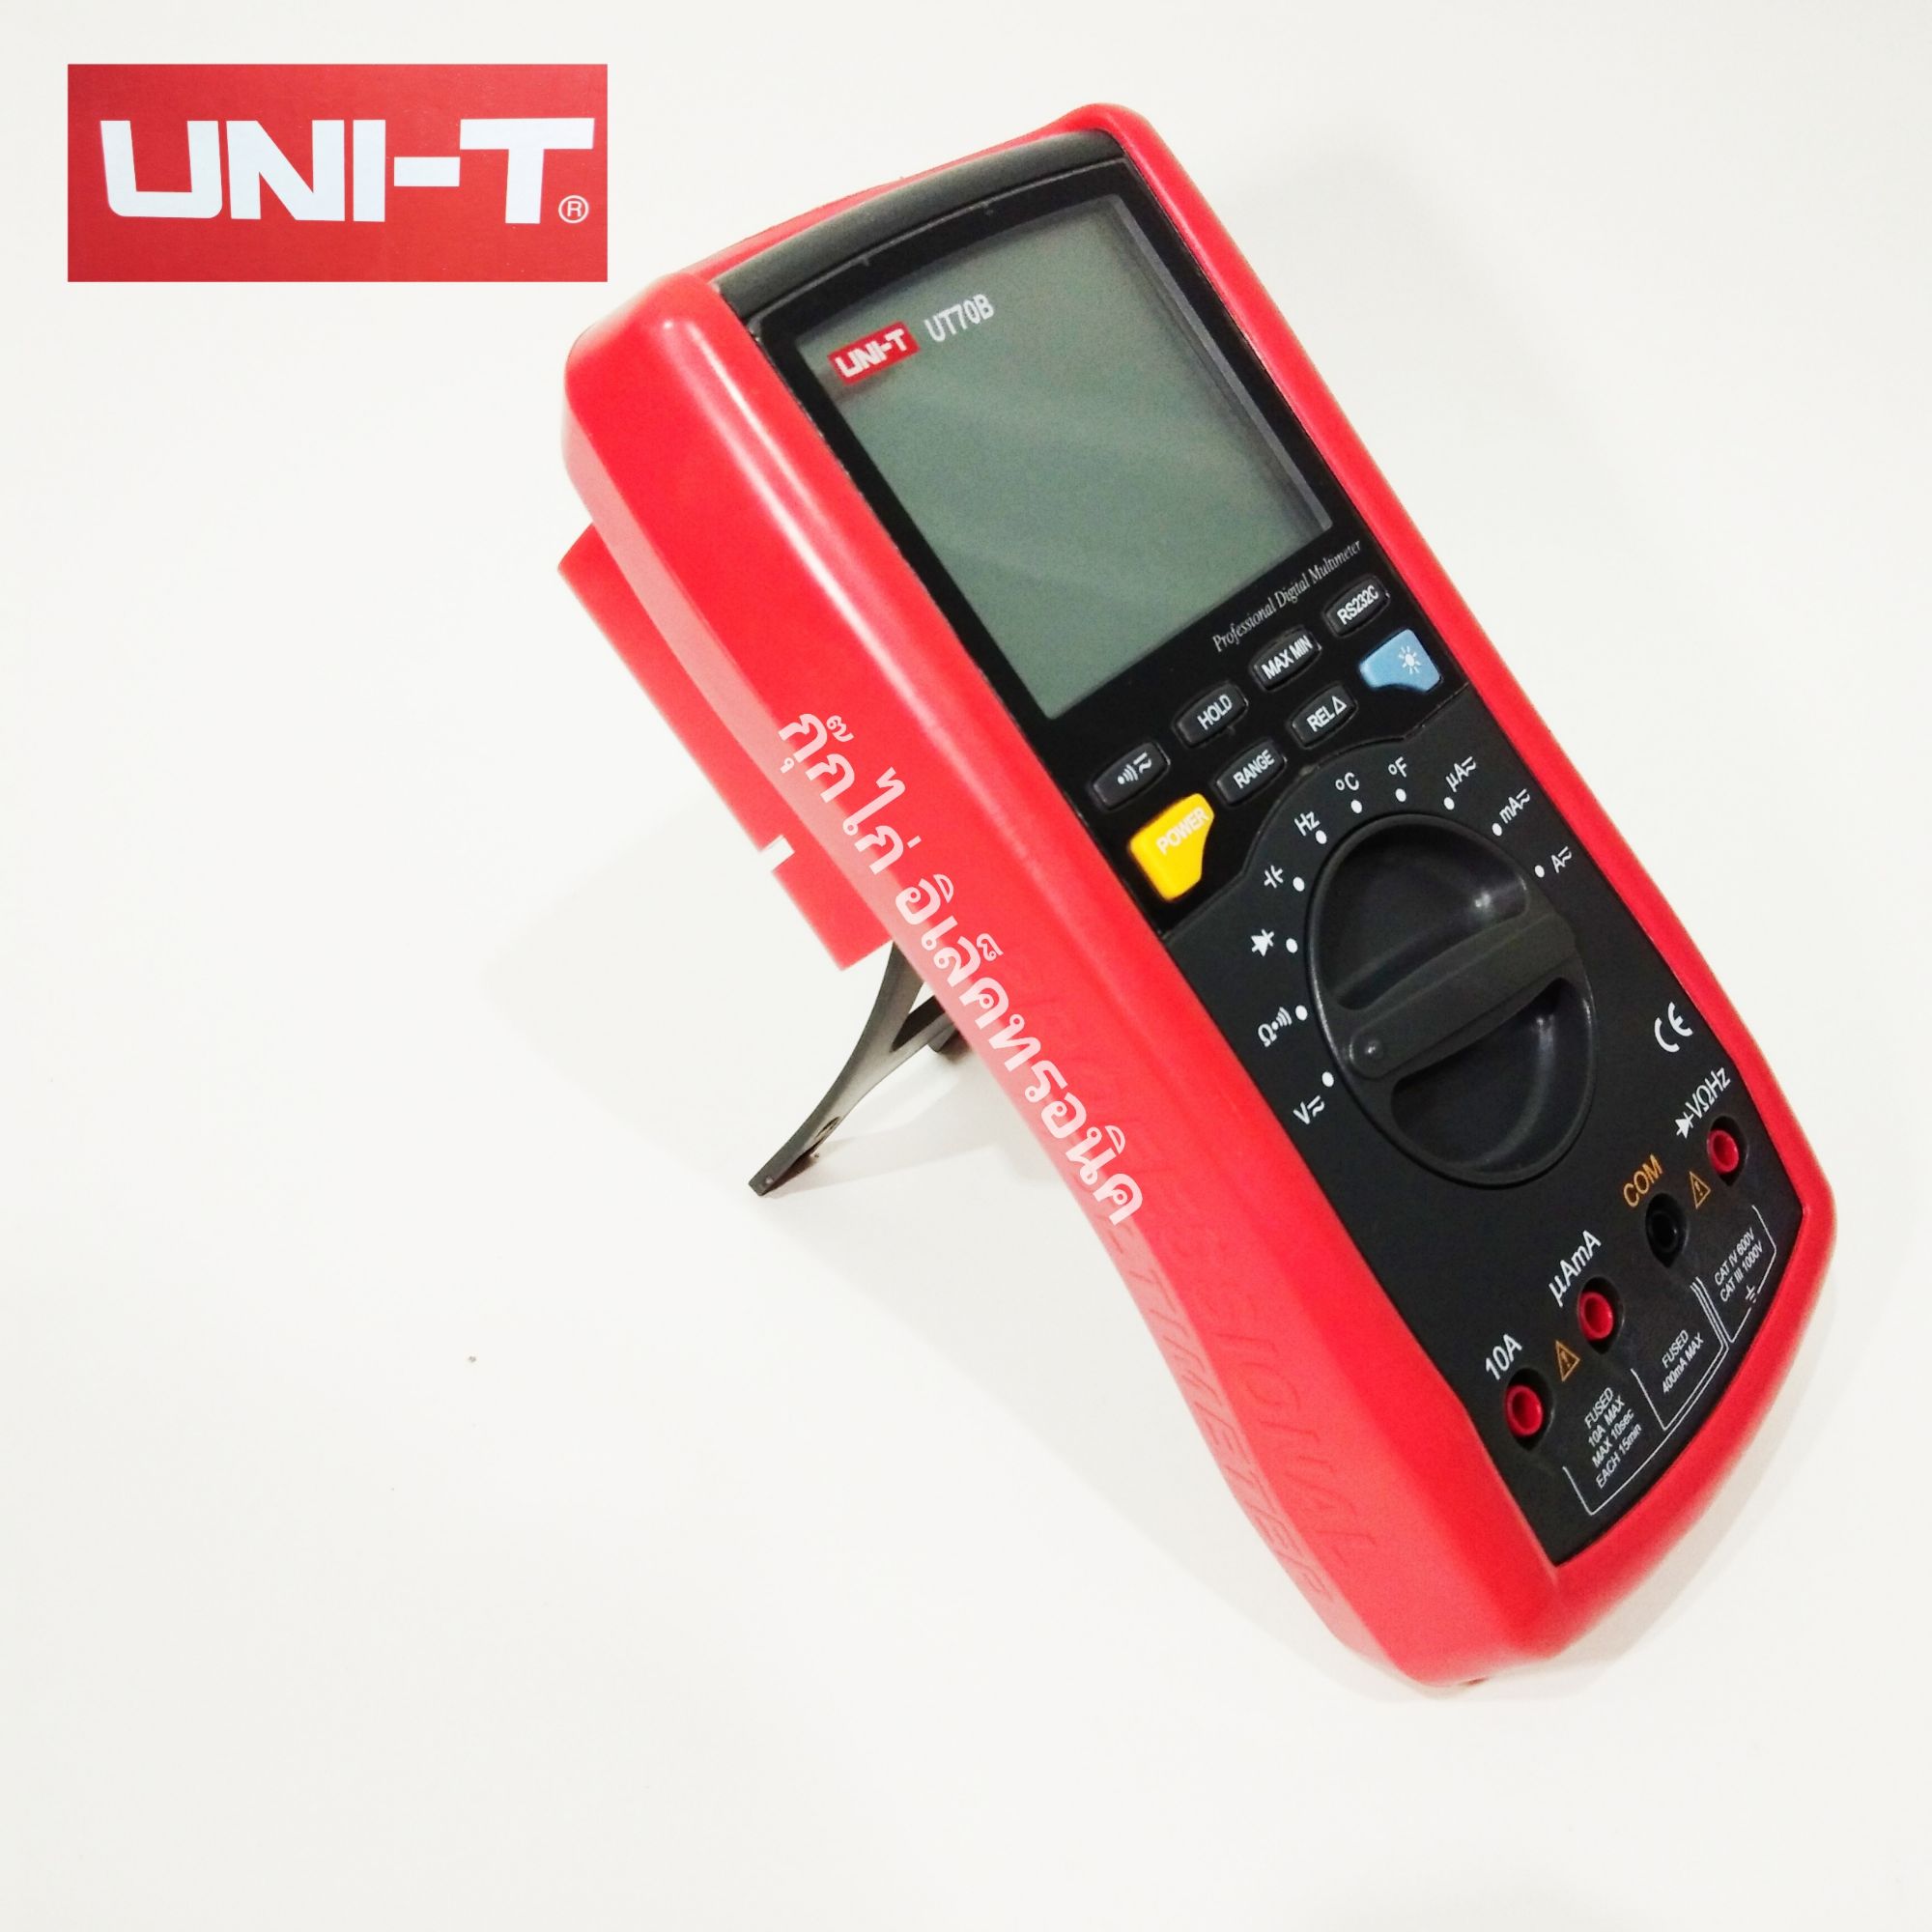 มิเตอร์วัดไฟ UNI-T UT70B ดิจิตอลมัลติมิเตอร์โวลต์ แอมป์ โอห์มชั่วคราวประจุทดสอบ